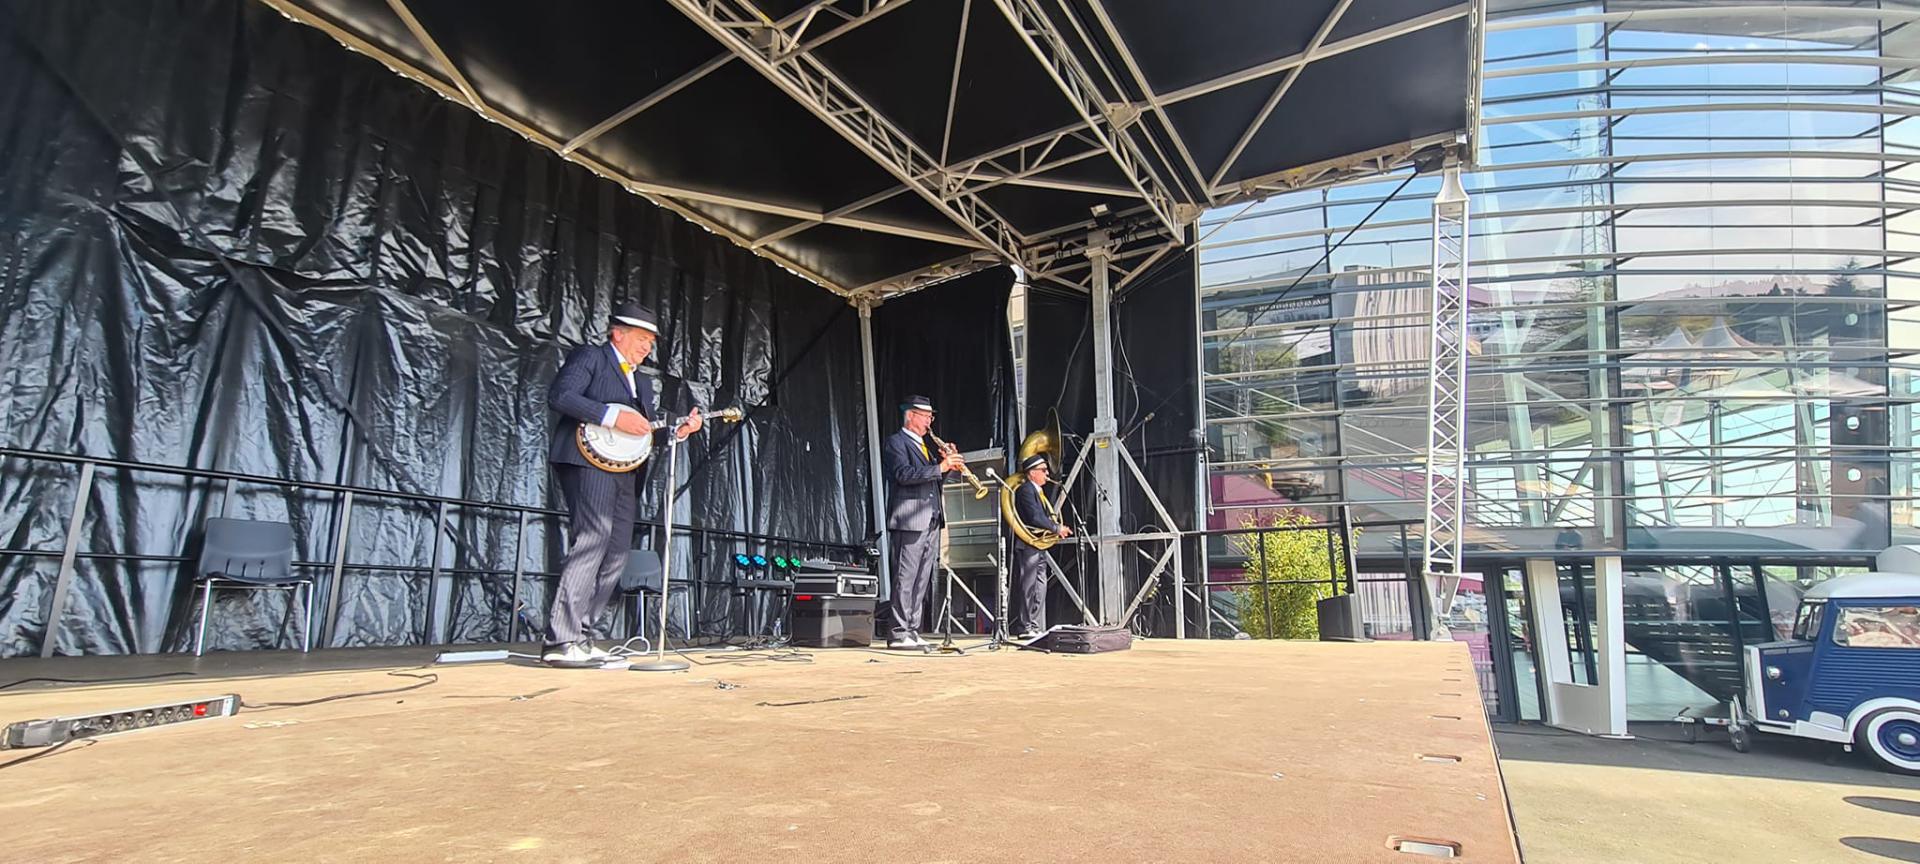 Vendredi 22 avril 2022, le groupe ONLY NEW JAZZ BAND était en formule Trio au Parc des Expositions à Angers de 16h à 19h, dans le cadre de la Foire d'Angers 2022 !